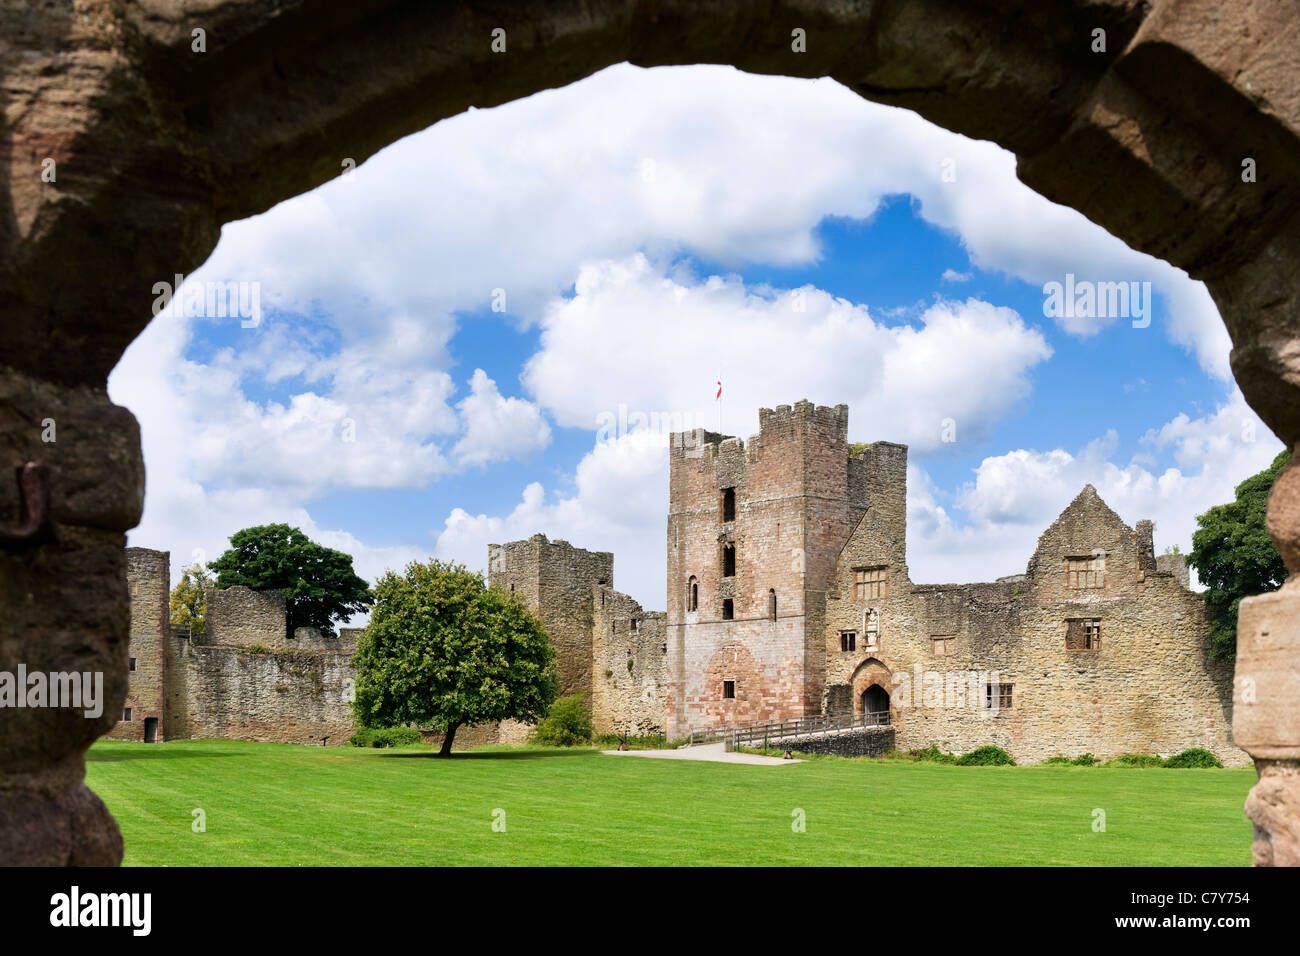 Ruins of Ludlow Castle, Ludlow, Shropshire, England, UK Stock Photo